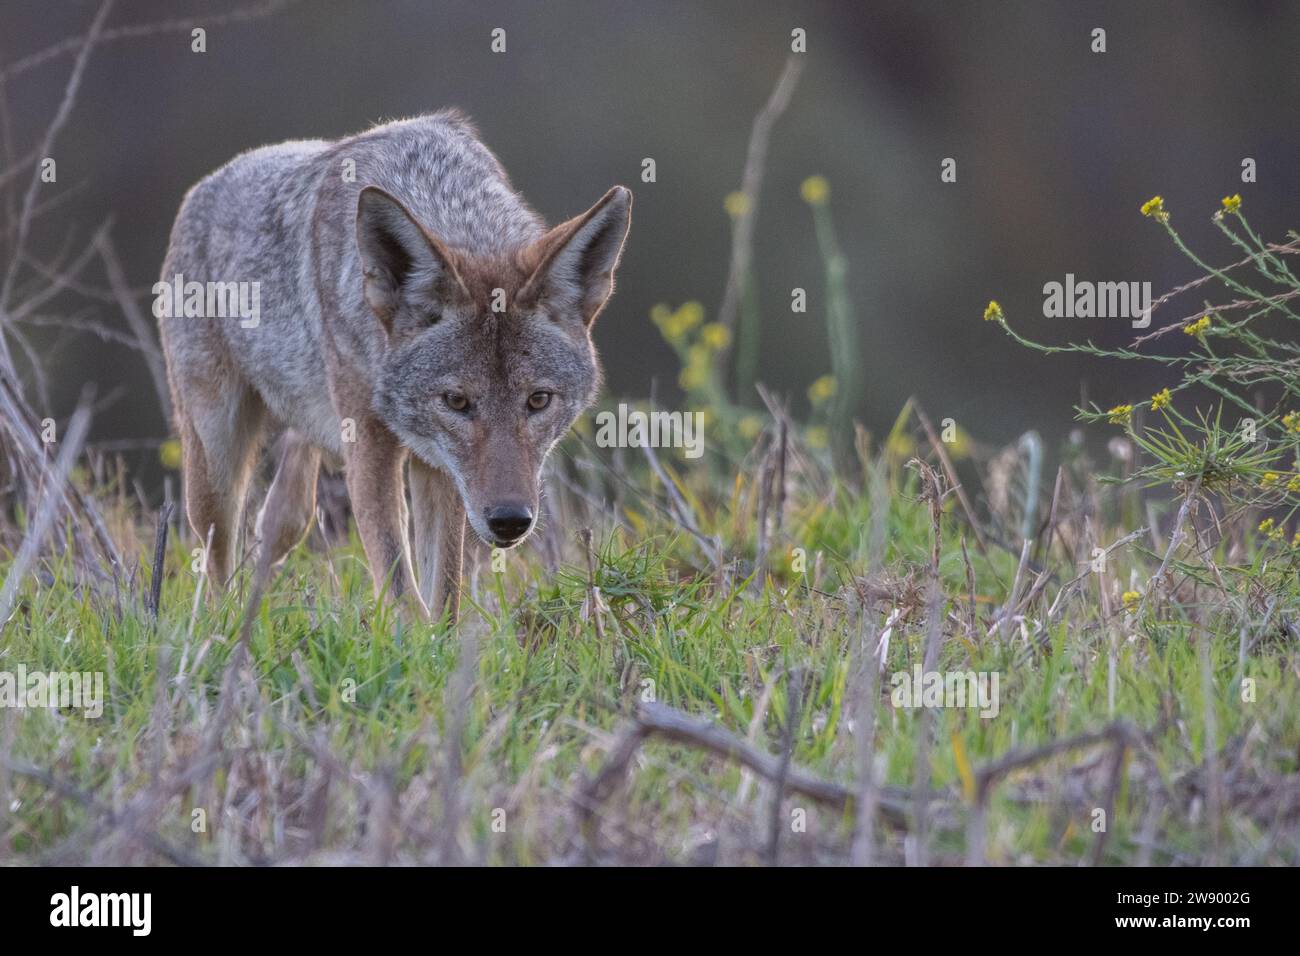 Un coyote sauvage, canis latrans, de la région de la baie de San Francisco en Californie, aux États-Unis. Banque D'Images